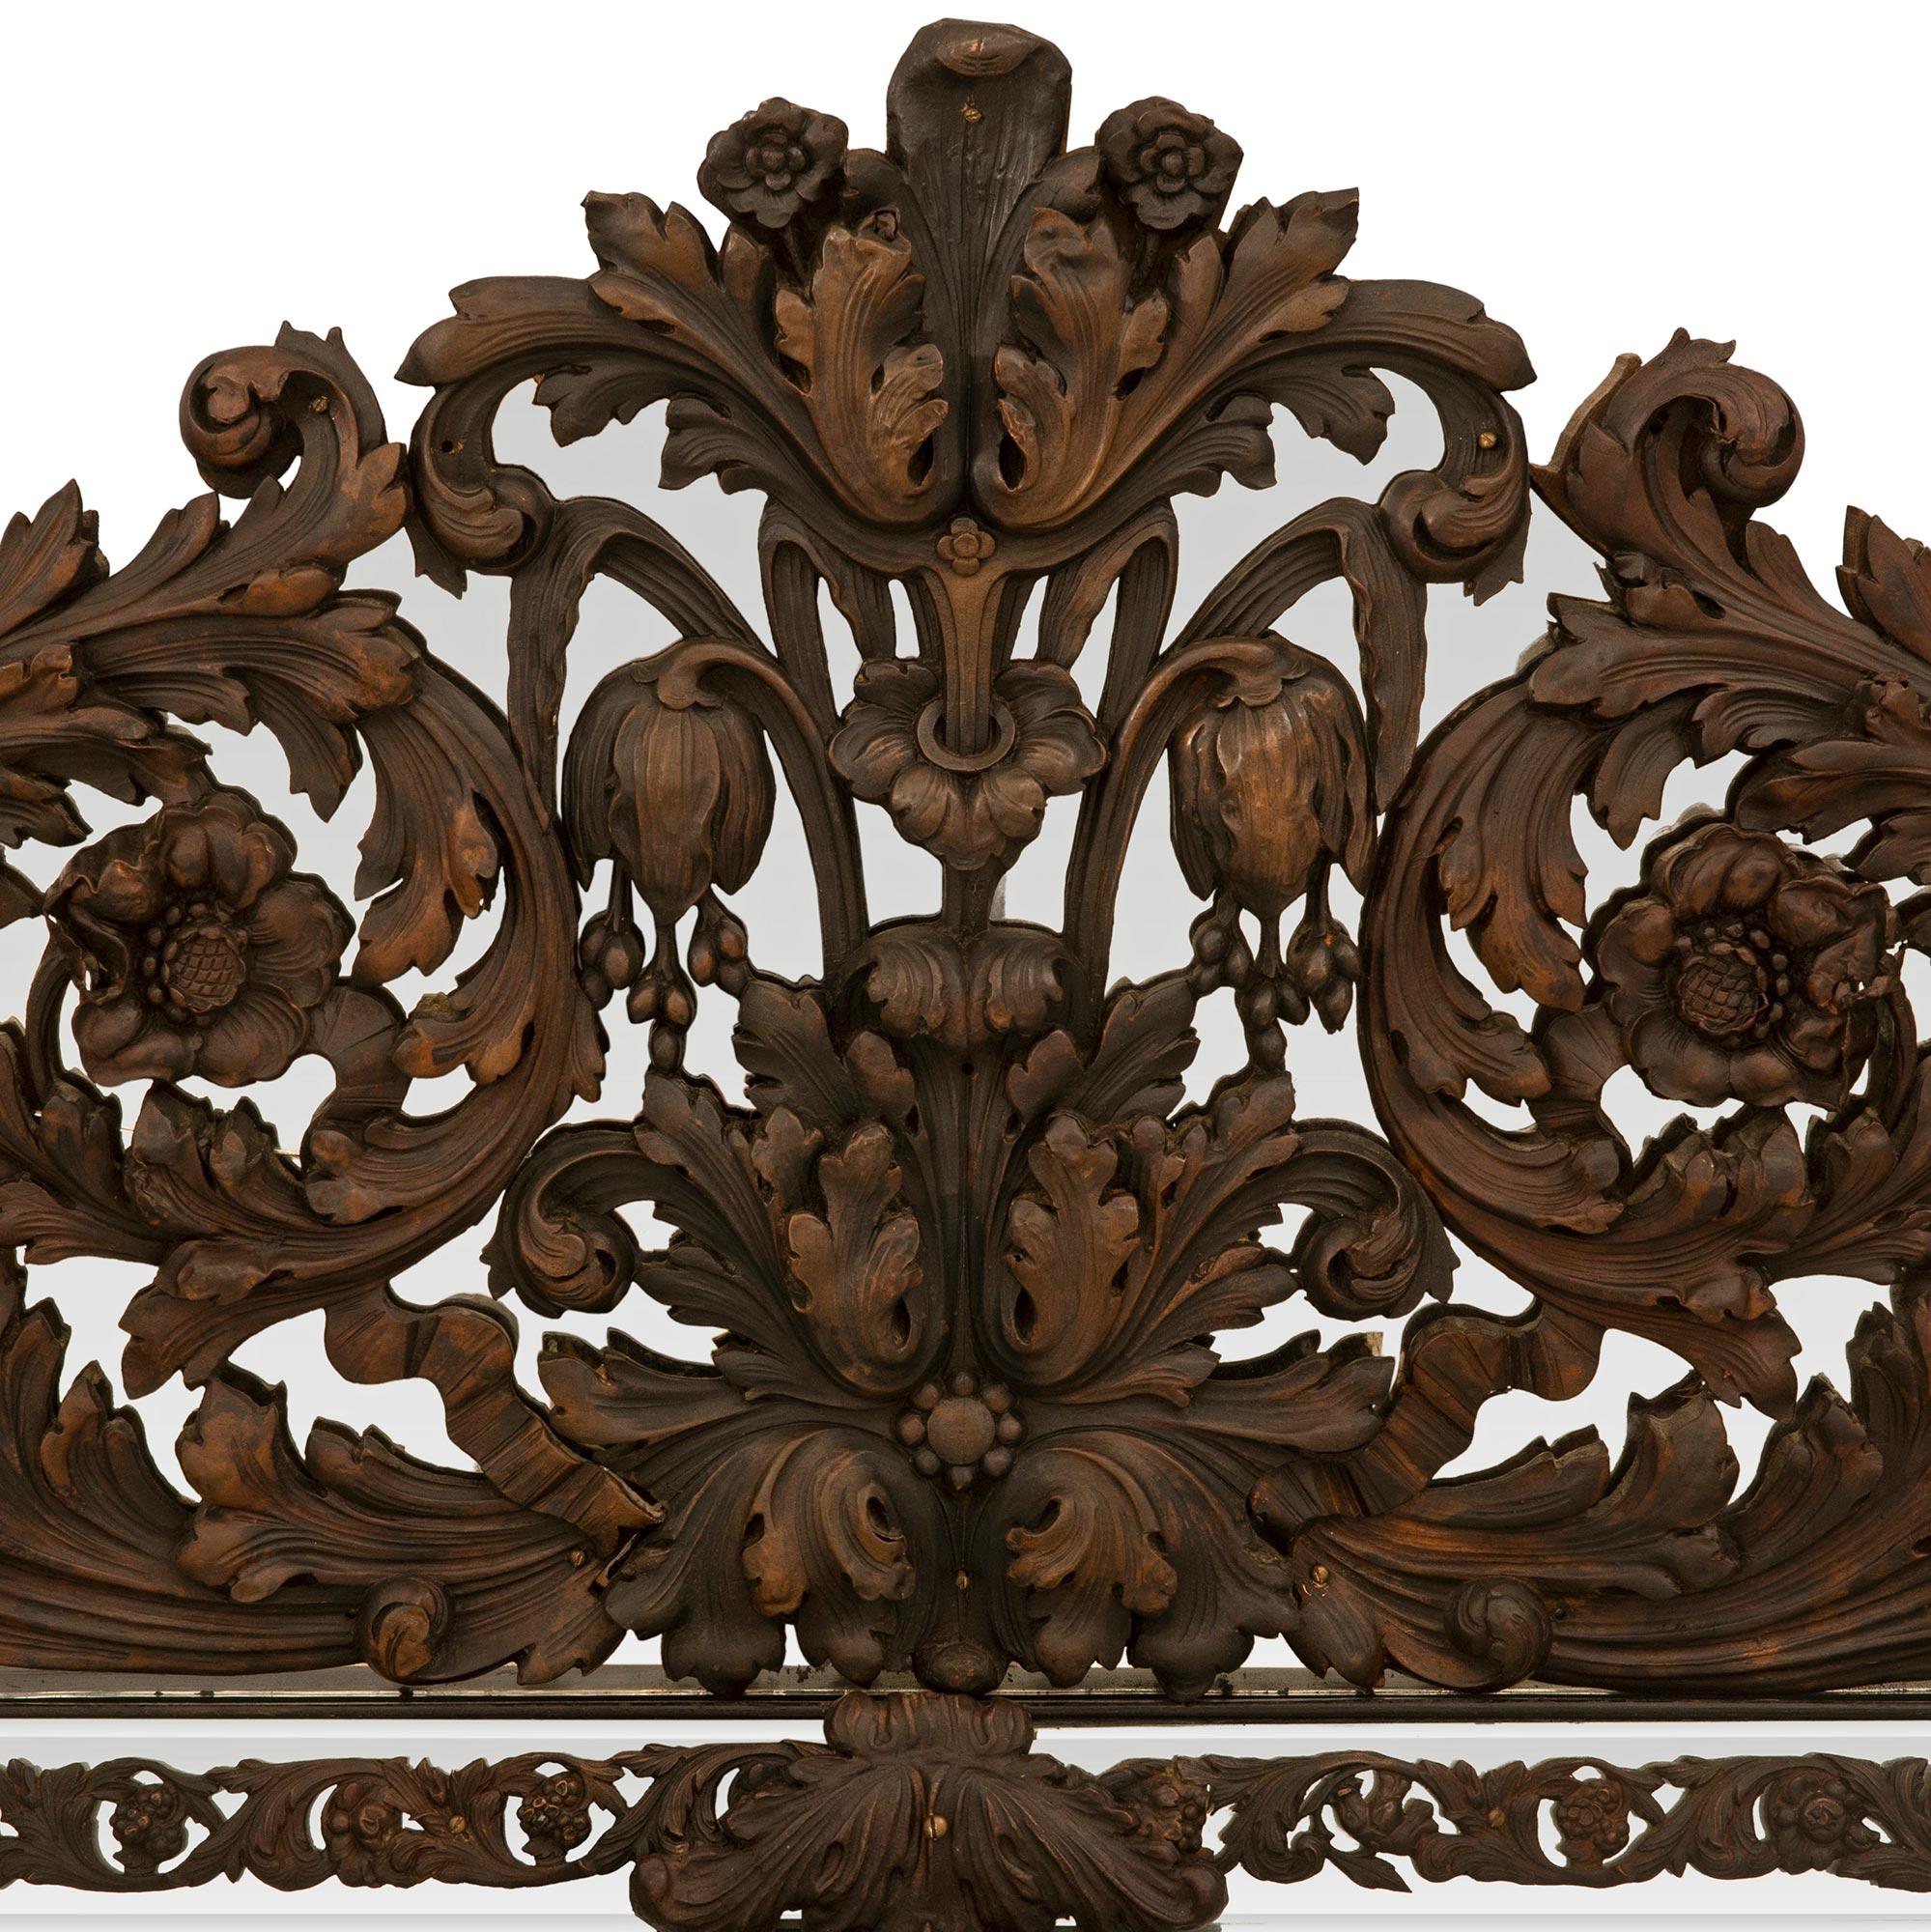 Miroir en métal pressé patiné de grande taille et de style baroque hollandais du XIXe siècle. Le miroir central biseauté d'origine est entouré d'un bandeau décoré de feuillages et de réserves dans les angles et à mi-hauteur. Chaque réserve percée